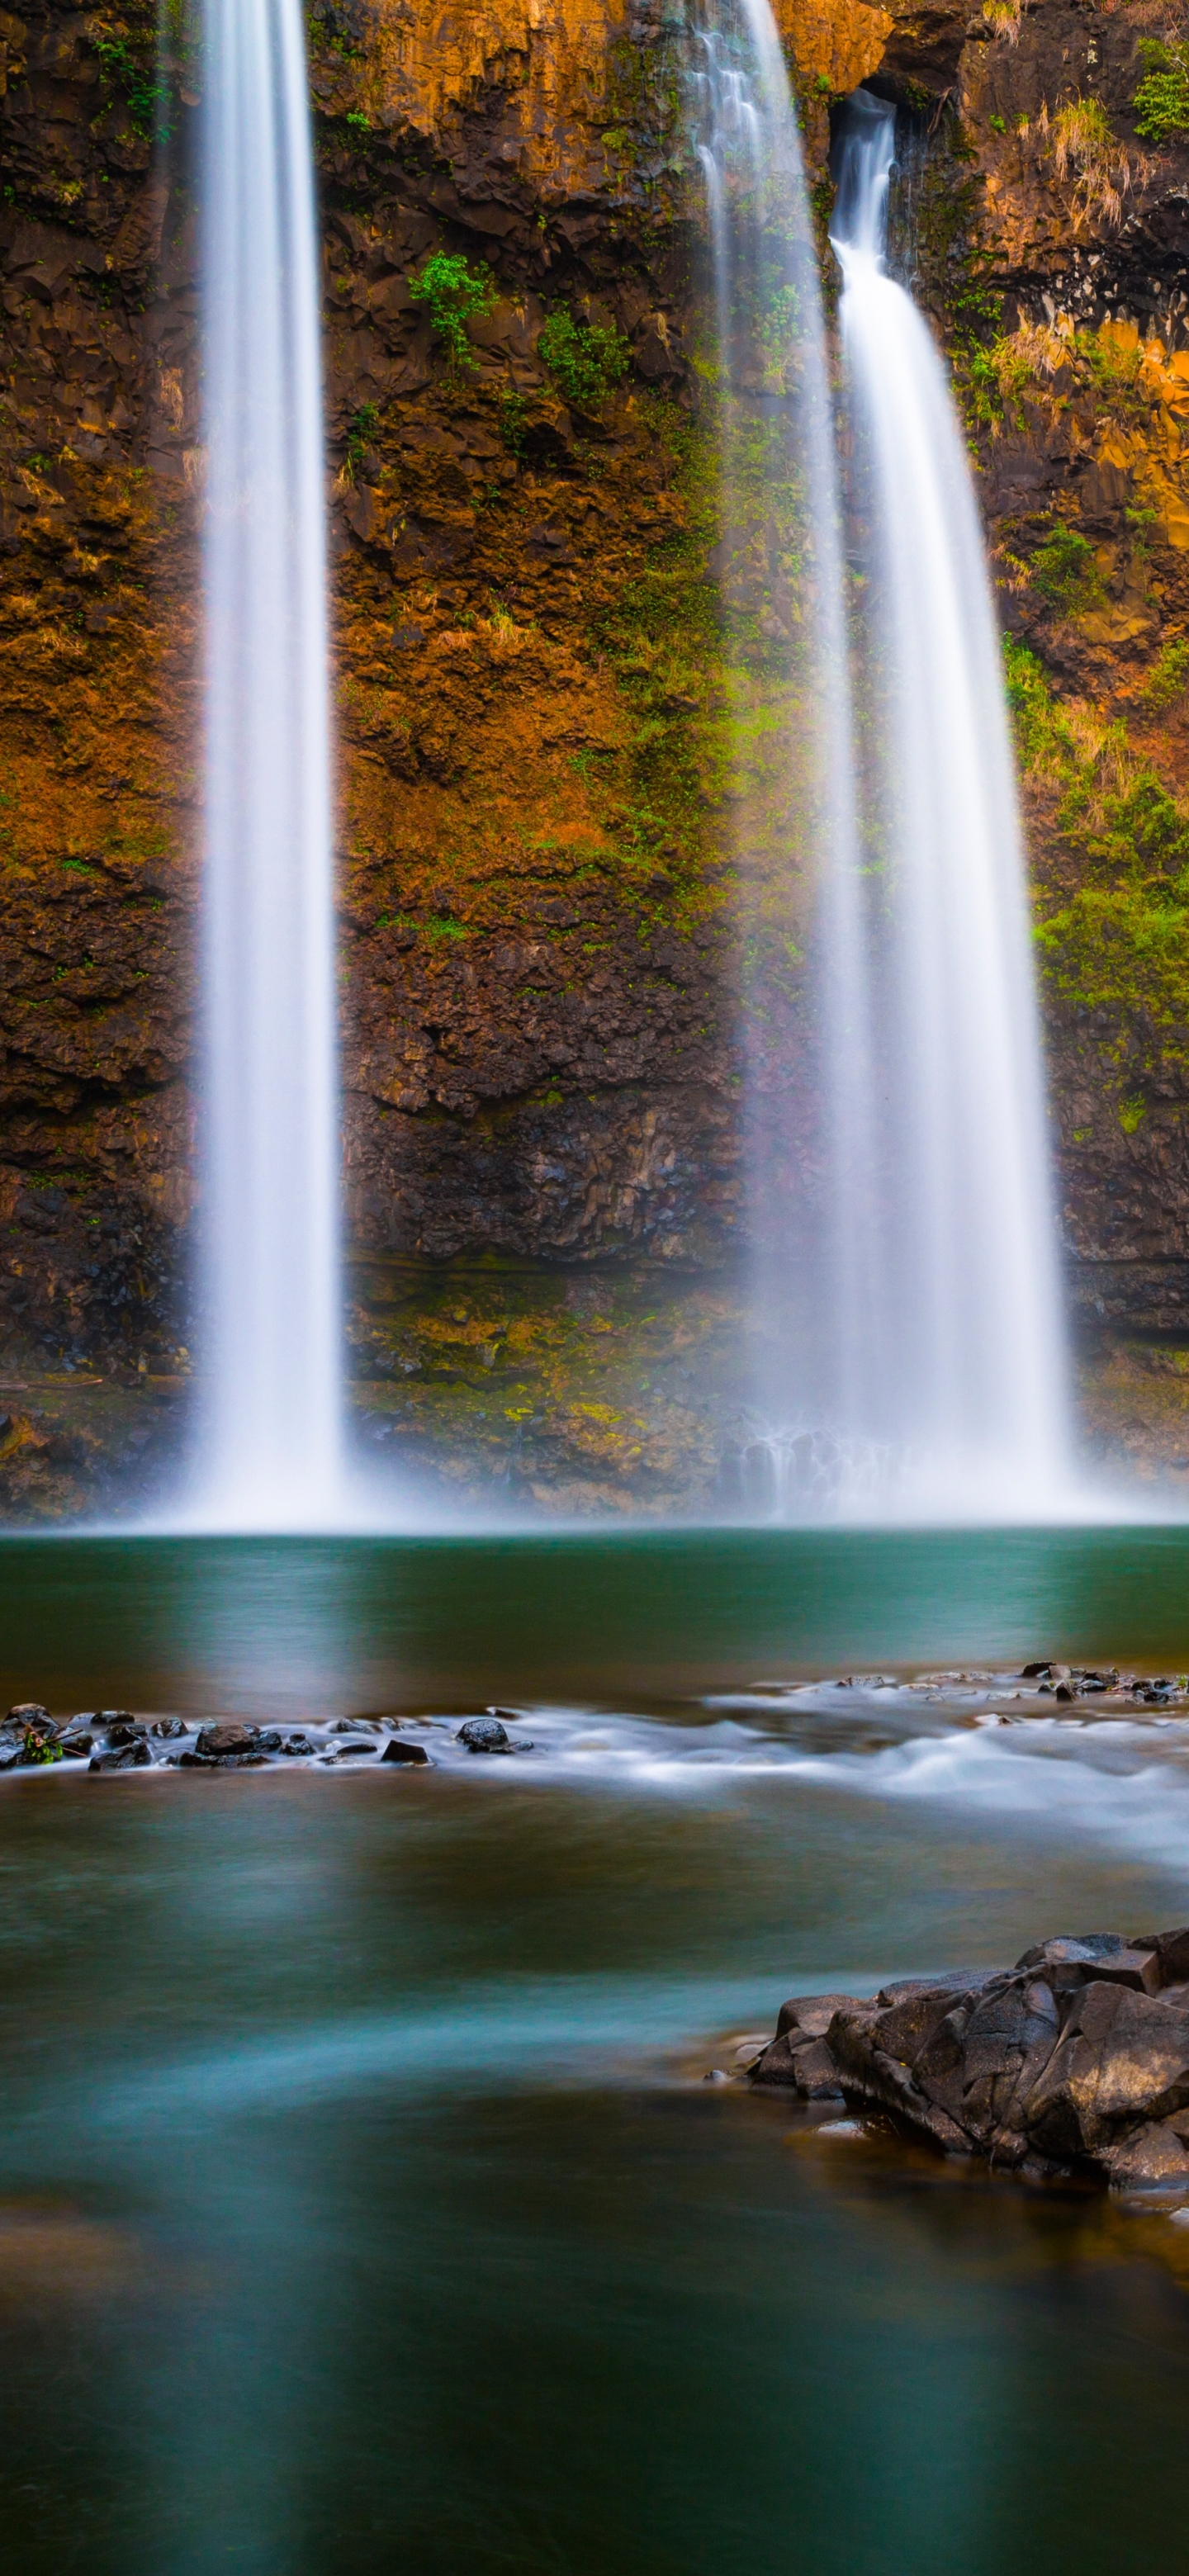 Скачать обои бесплатно Водопады, Водопад, Утес, Гавайи, Земля/природа, Утёс картинка на рабочий стол ПК